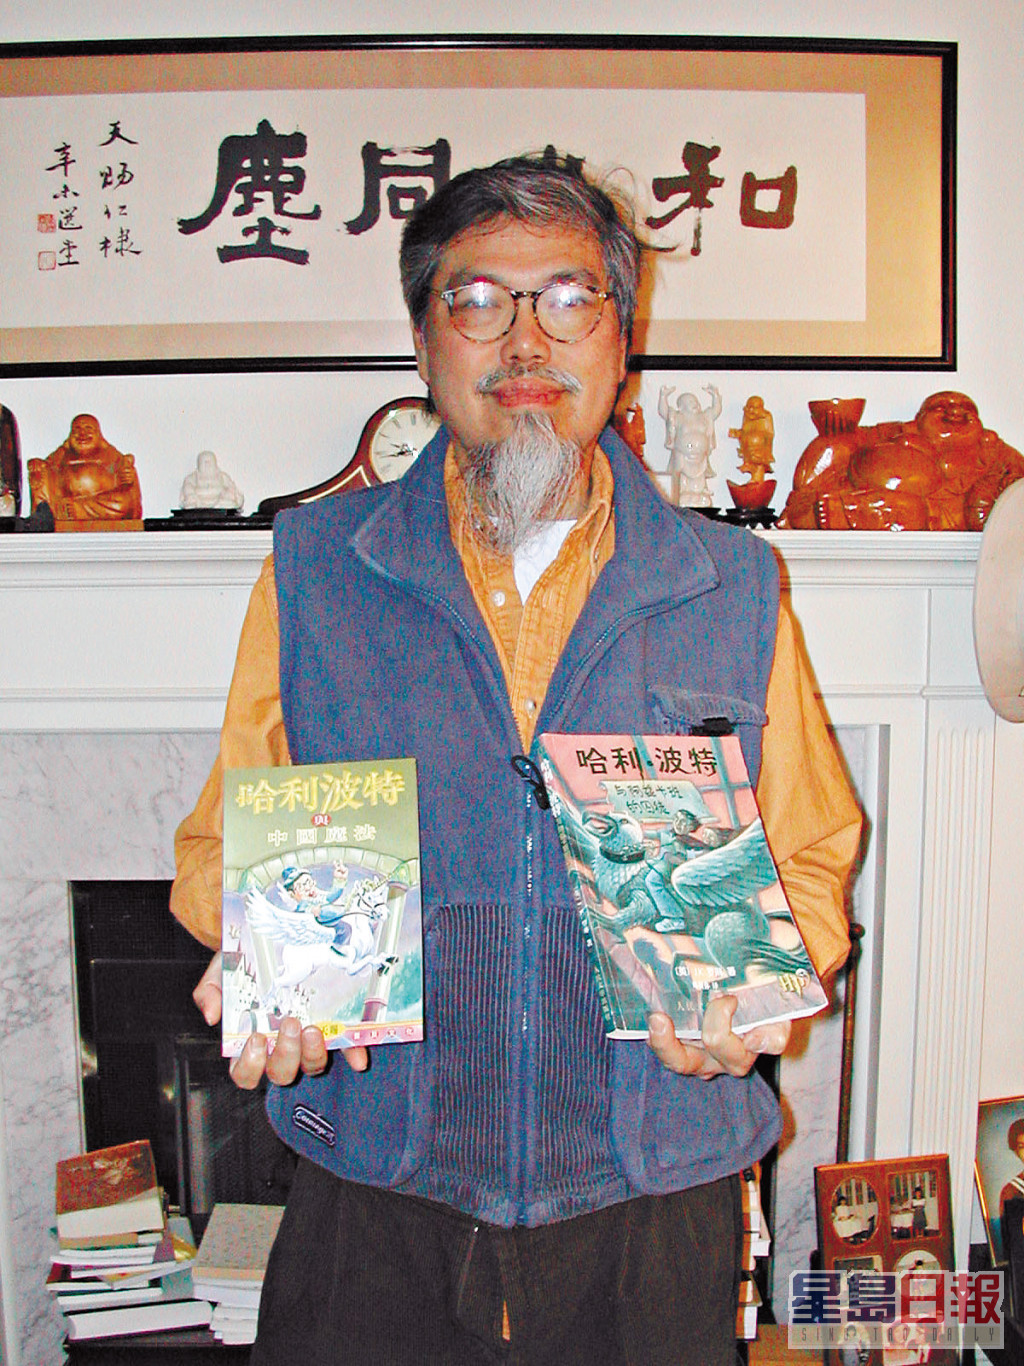 刘天赐曾出任报社执行董事及专栏作家，过去亦推出不少书籍。